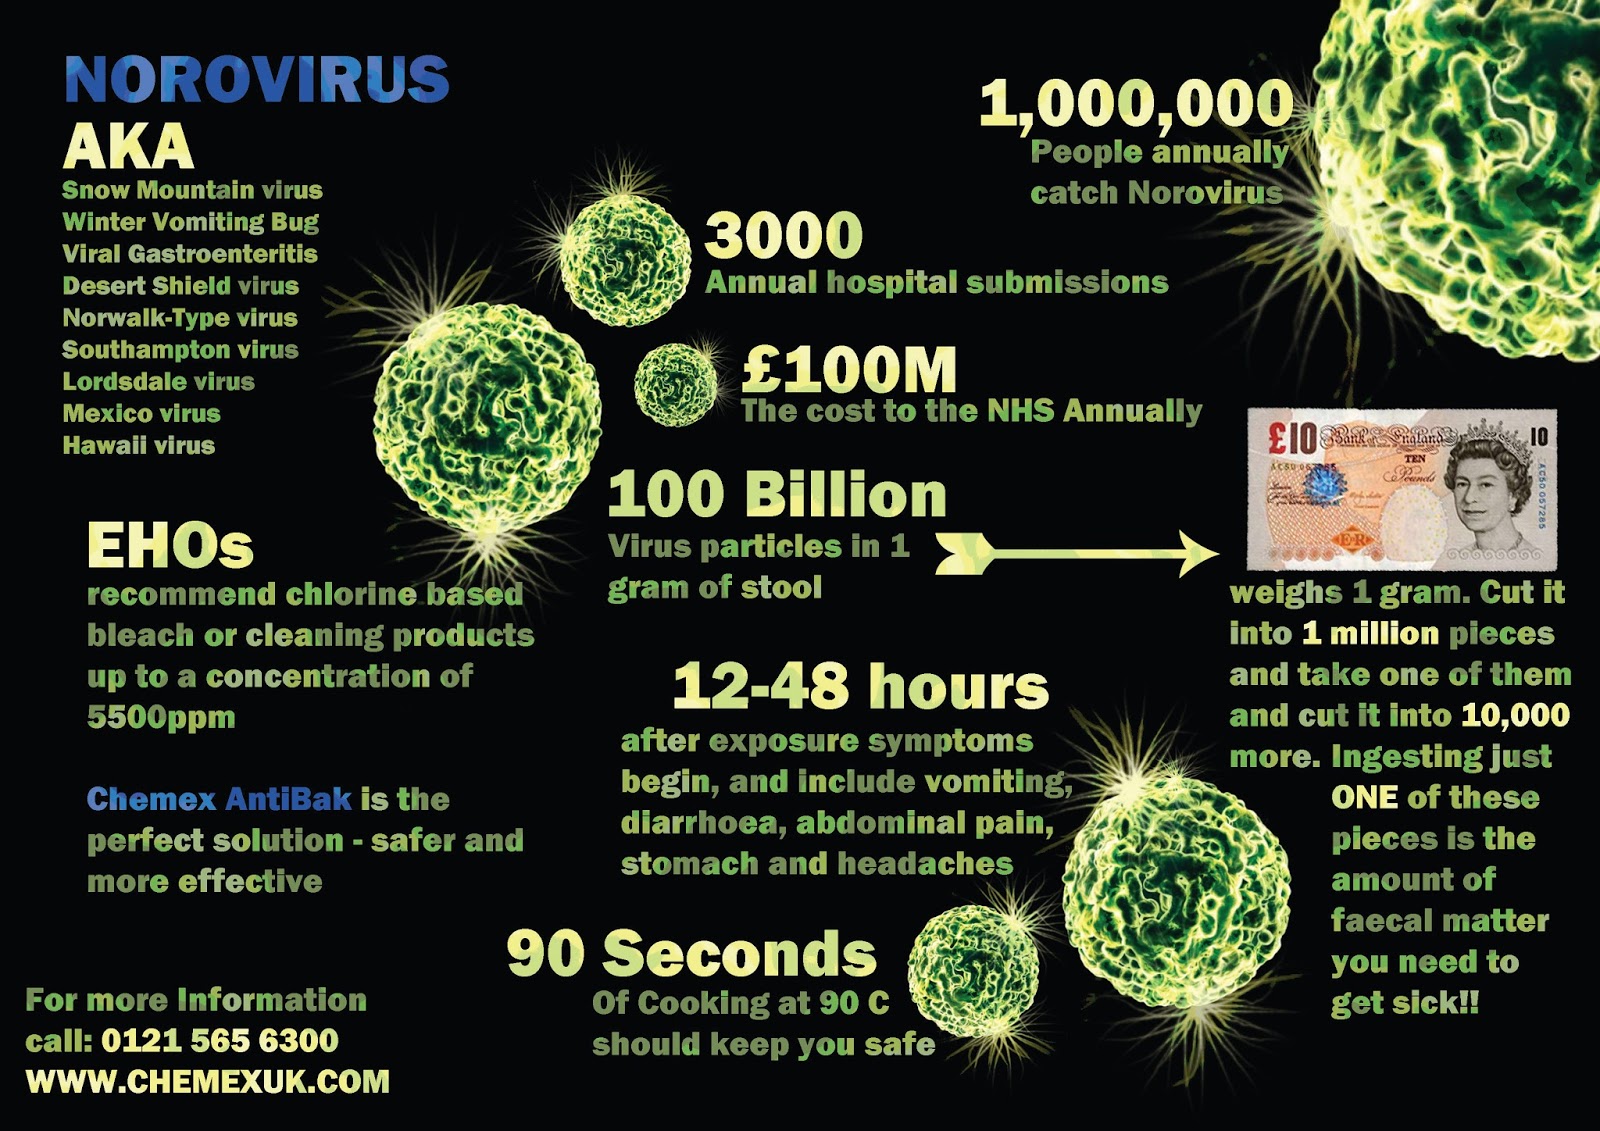 Генотипы норовируса